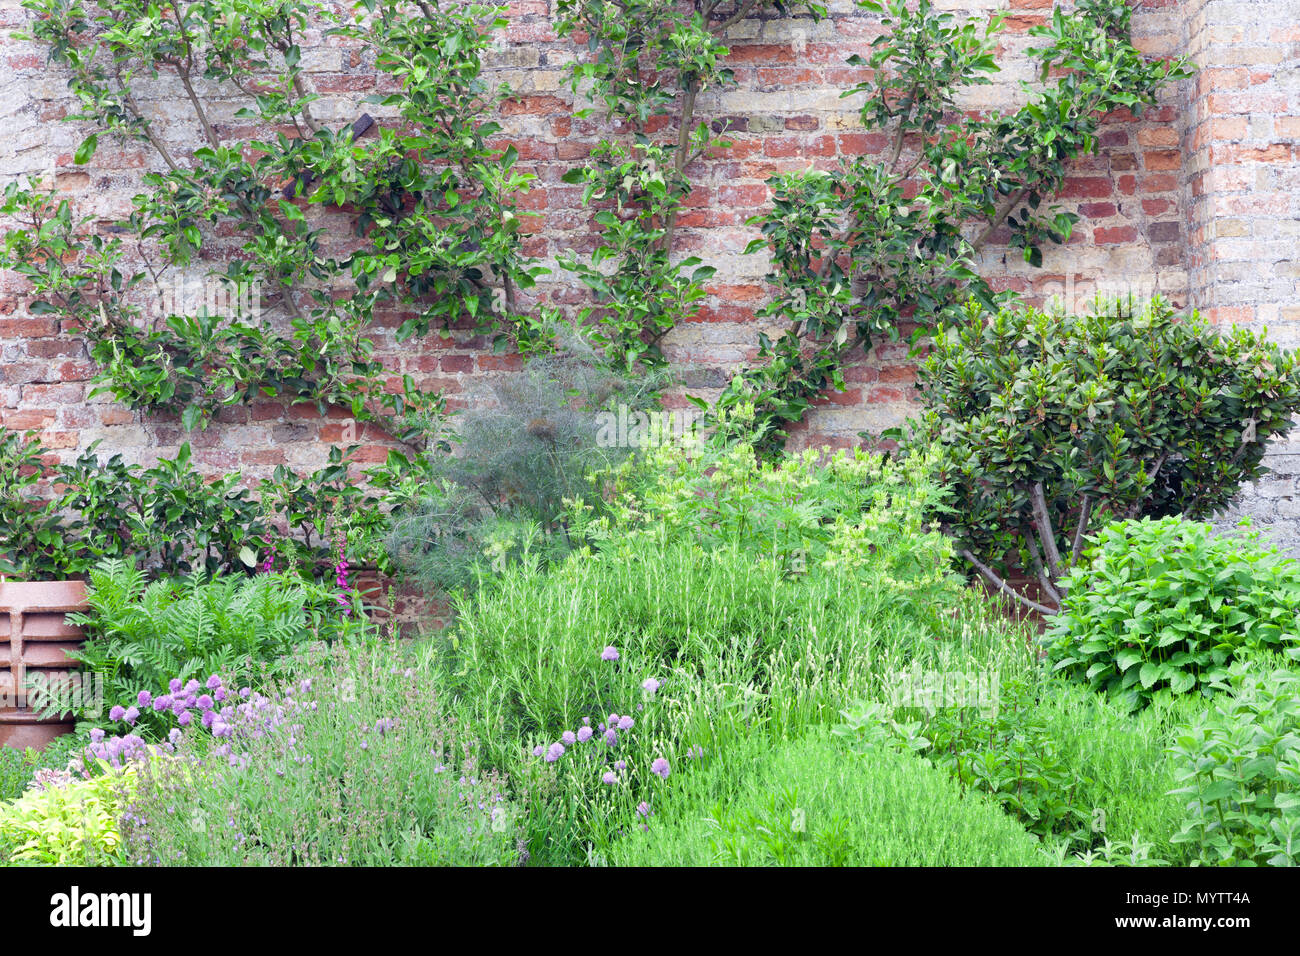 Sommer Kräutergarten mit organisch gewachsenen Rosmarin, Salbei, Frühlingszwiebeln, Minze, Lorbeerblatt, neben der Mauer mit einem Apfelbaum. Stockfoto